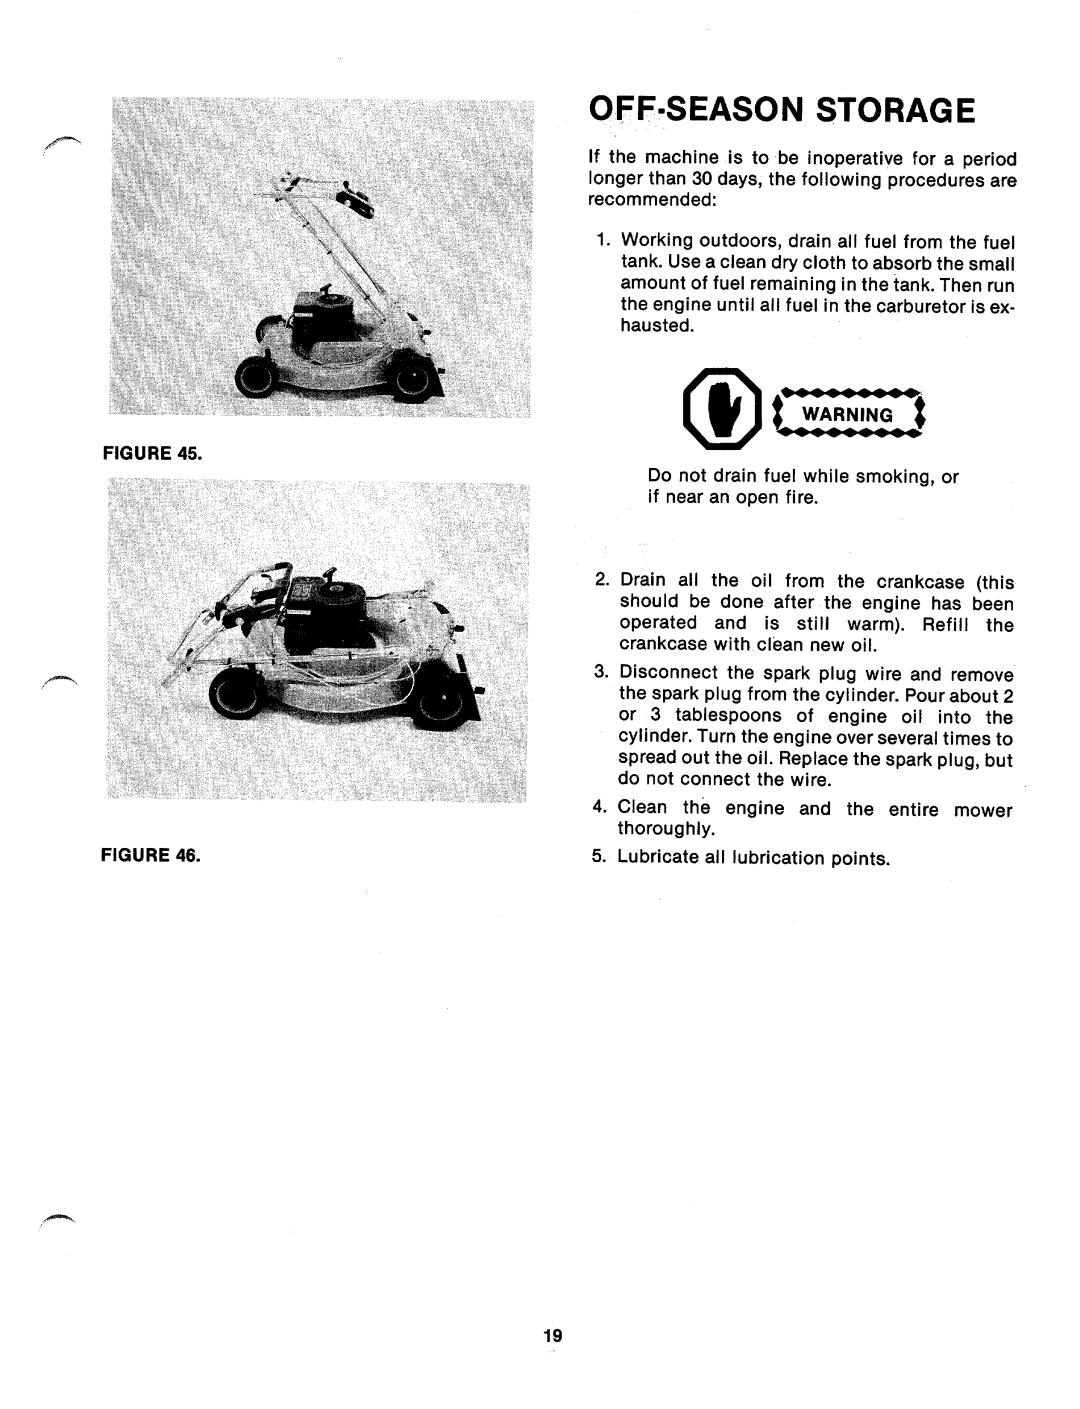 MTD 121-346A manual 